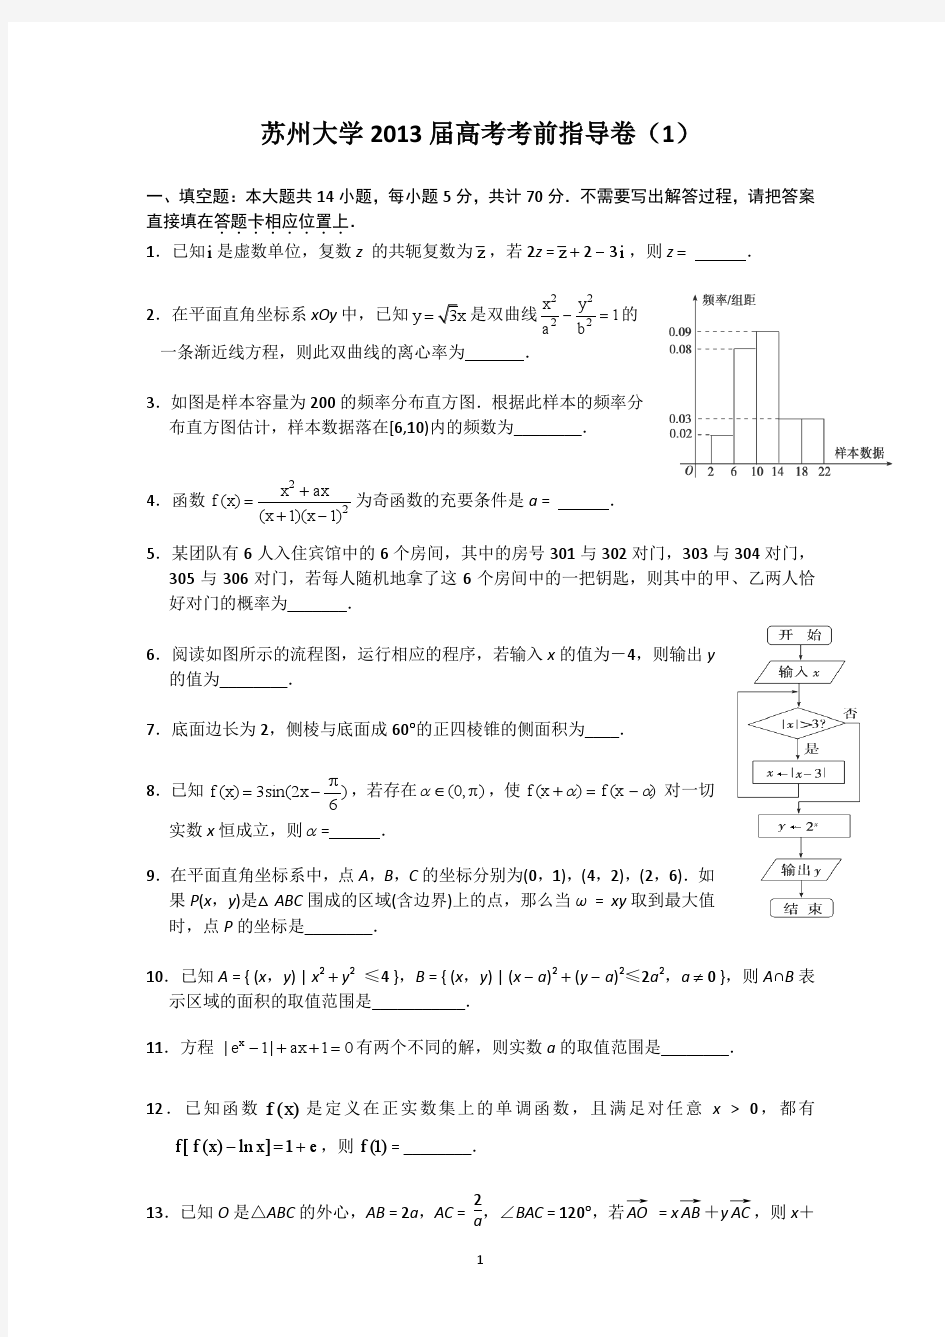 苏州大学2013届高三高考考前指导卷(1) 数学试题